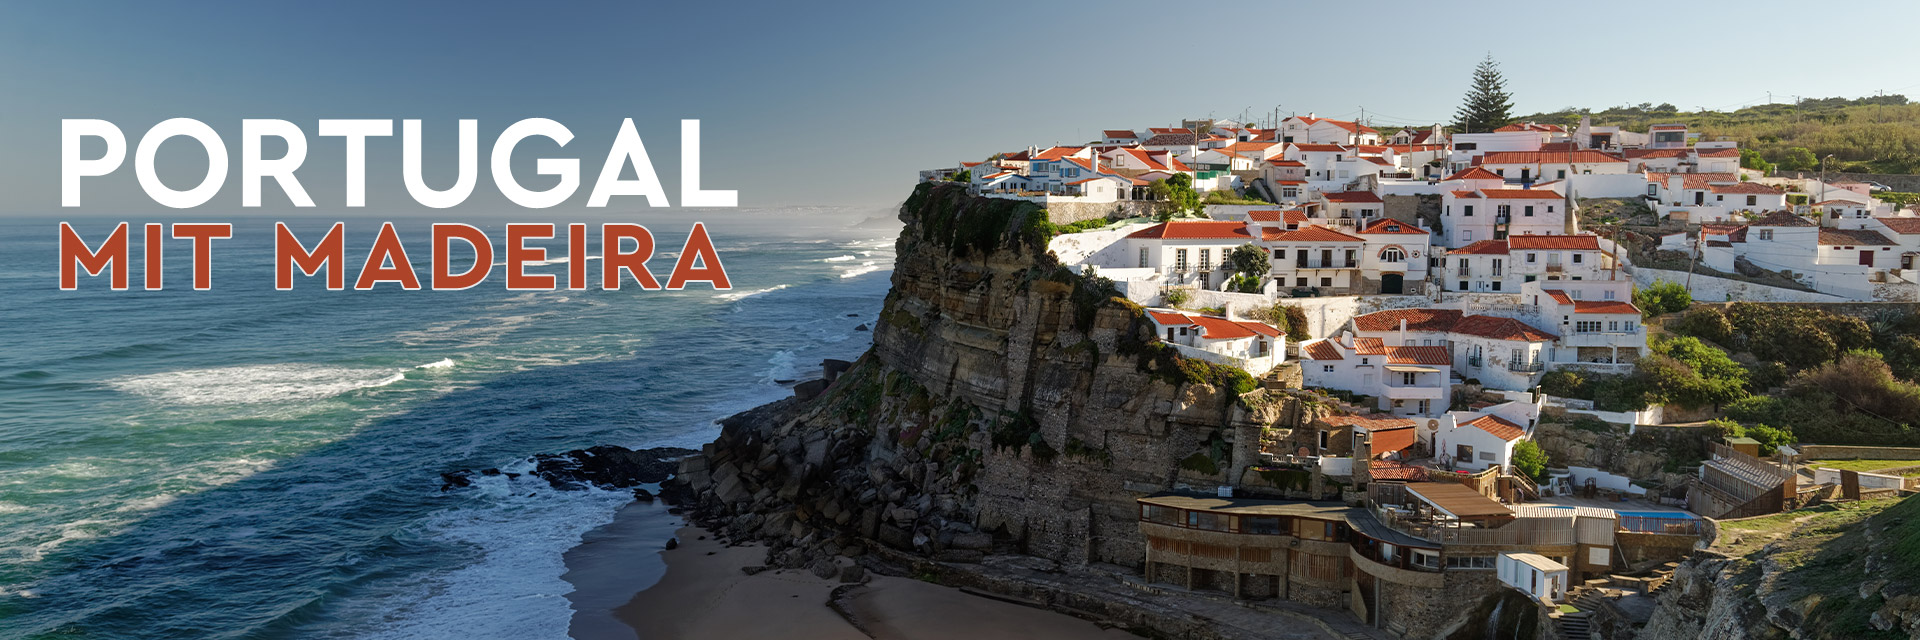 Portugal mit Madeira – Atlantik, Weite, Stille